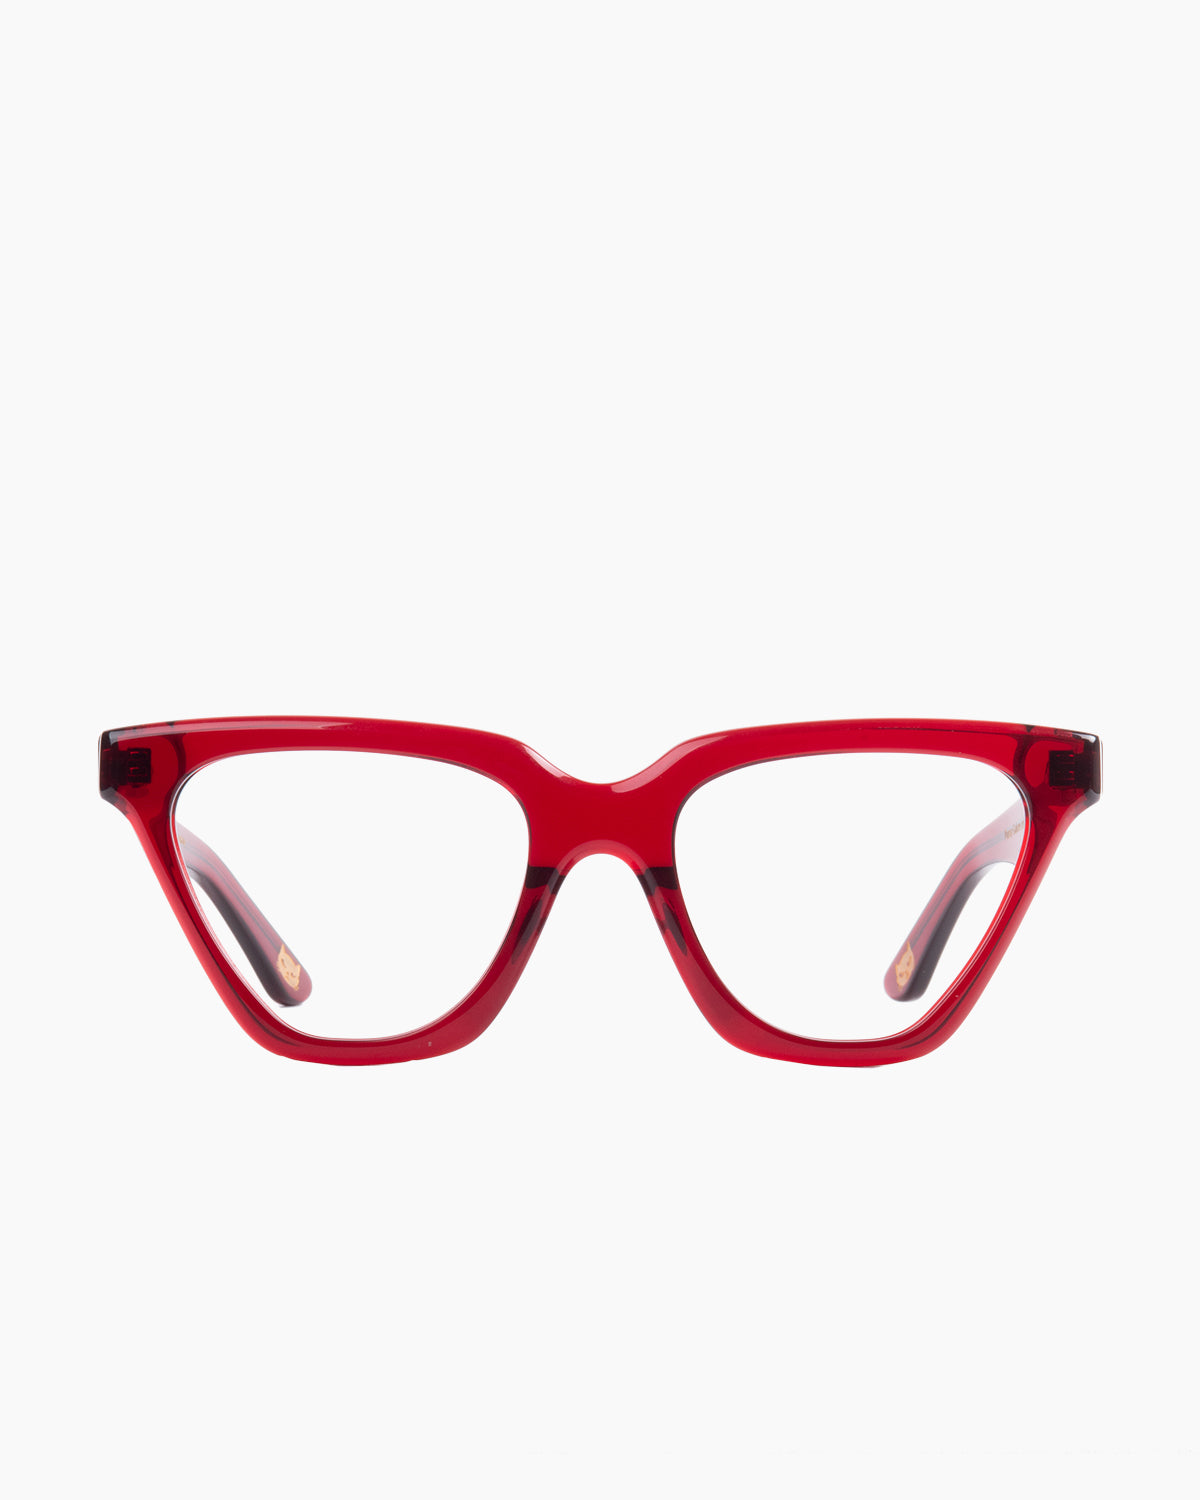 Spectacleeyeworks - Joelle - c730 | glasses bar:  Marie-Sophie Dion